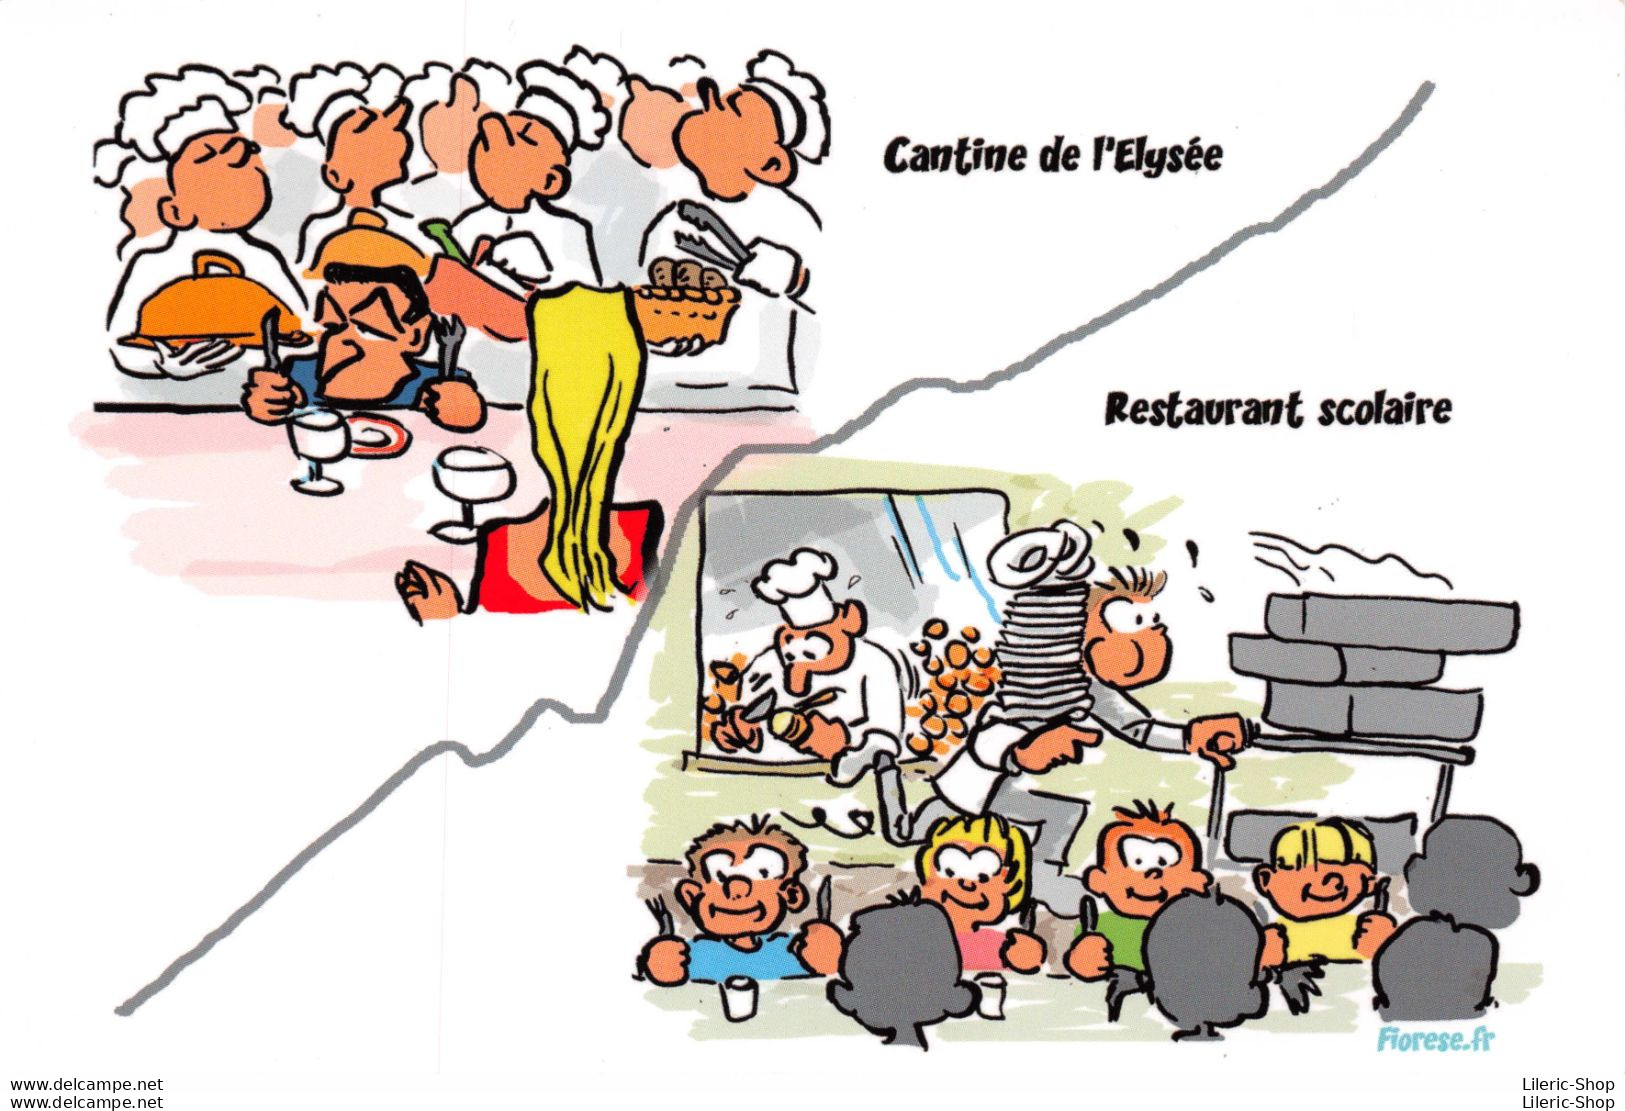 CFDT Pétition Pour Le Soutien Au Service Public Cantine Elysée Et Restaurant Scolaire - Illustrateur Laurent FIOREZE ♥♥♥ - Labor Unions